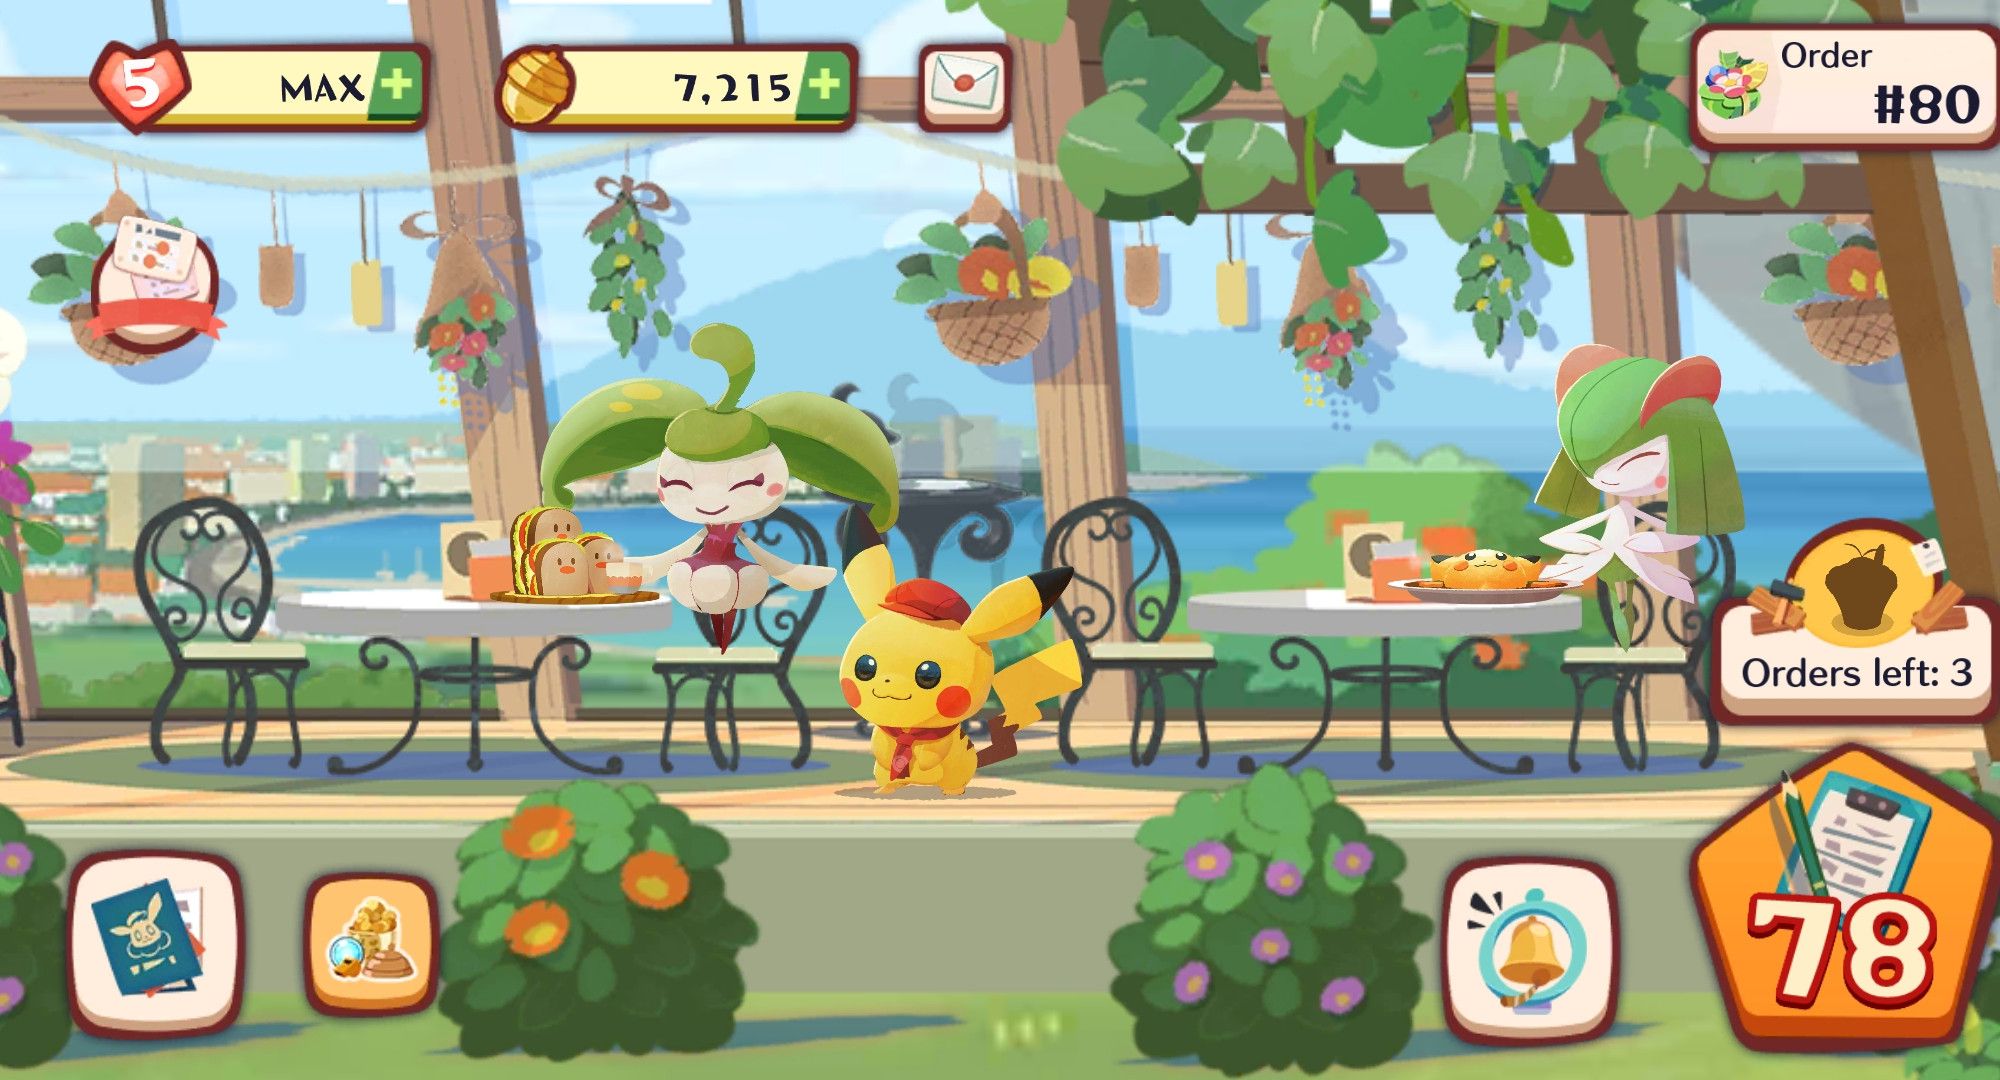 Pokémon Café Mix Brews Up Beautiful Challenging Puzzles